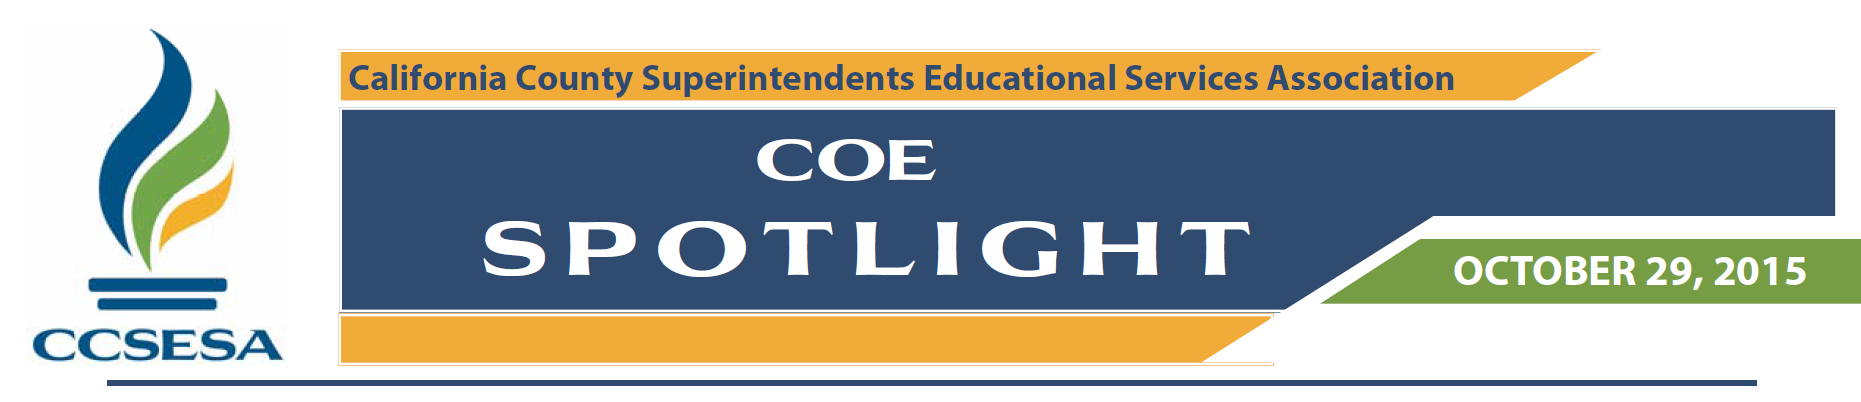 COE Spotlight 10.29.2015